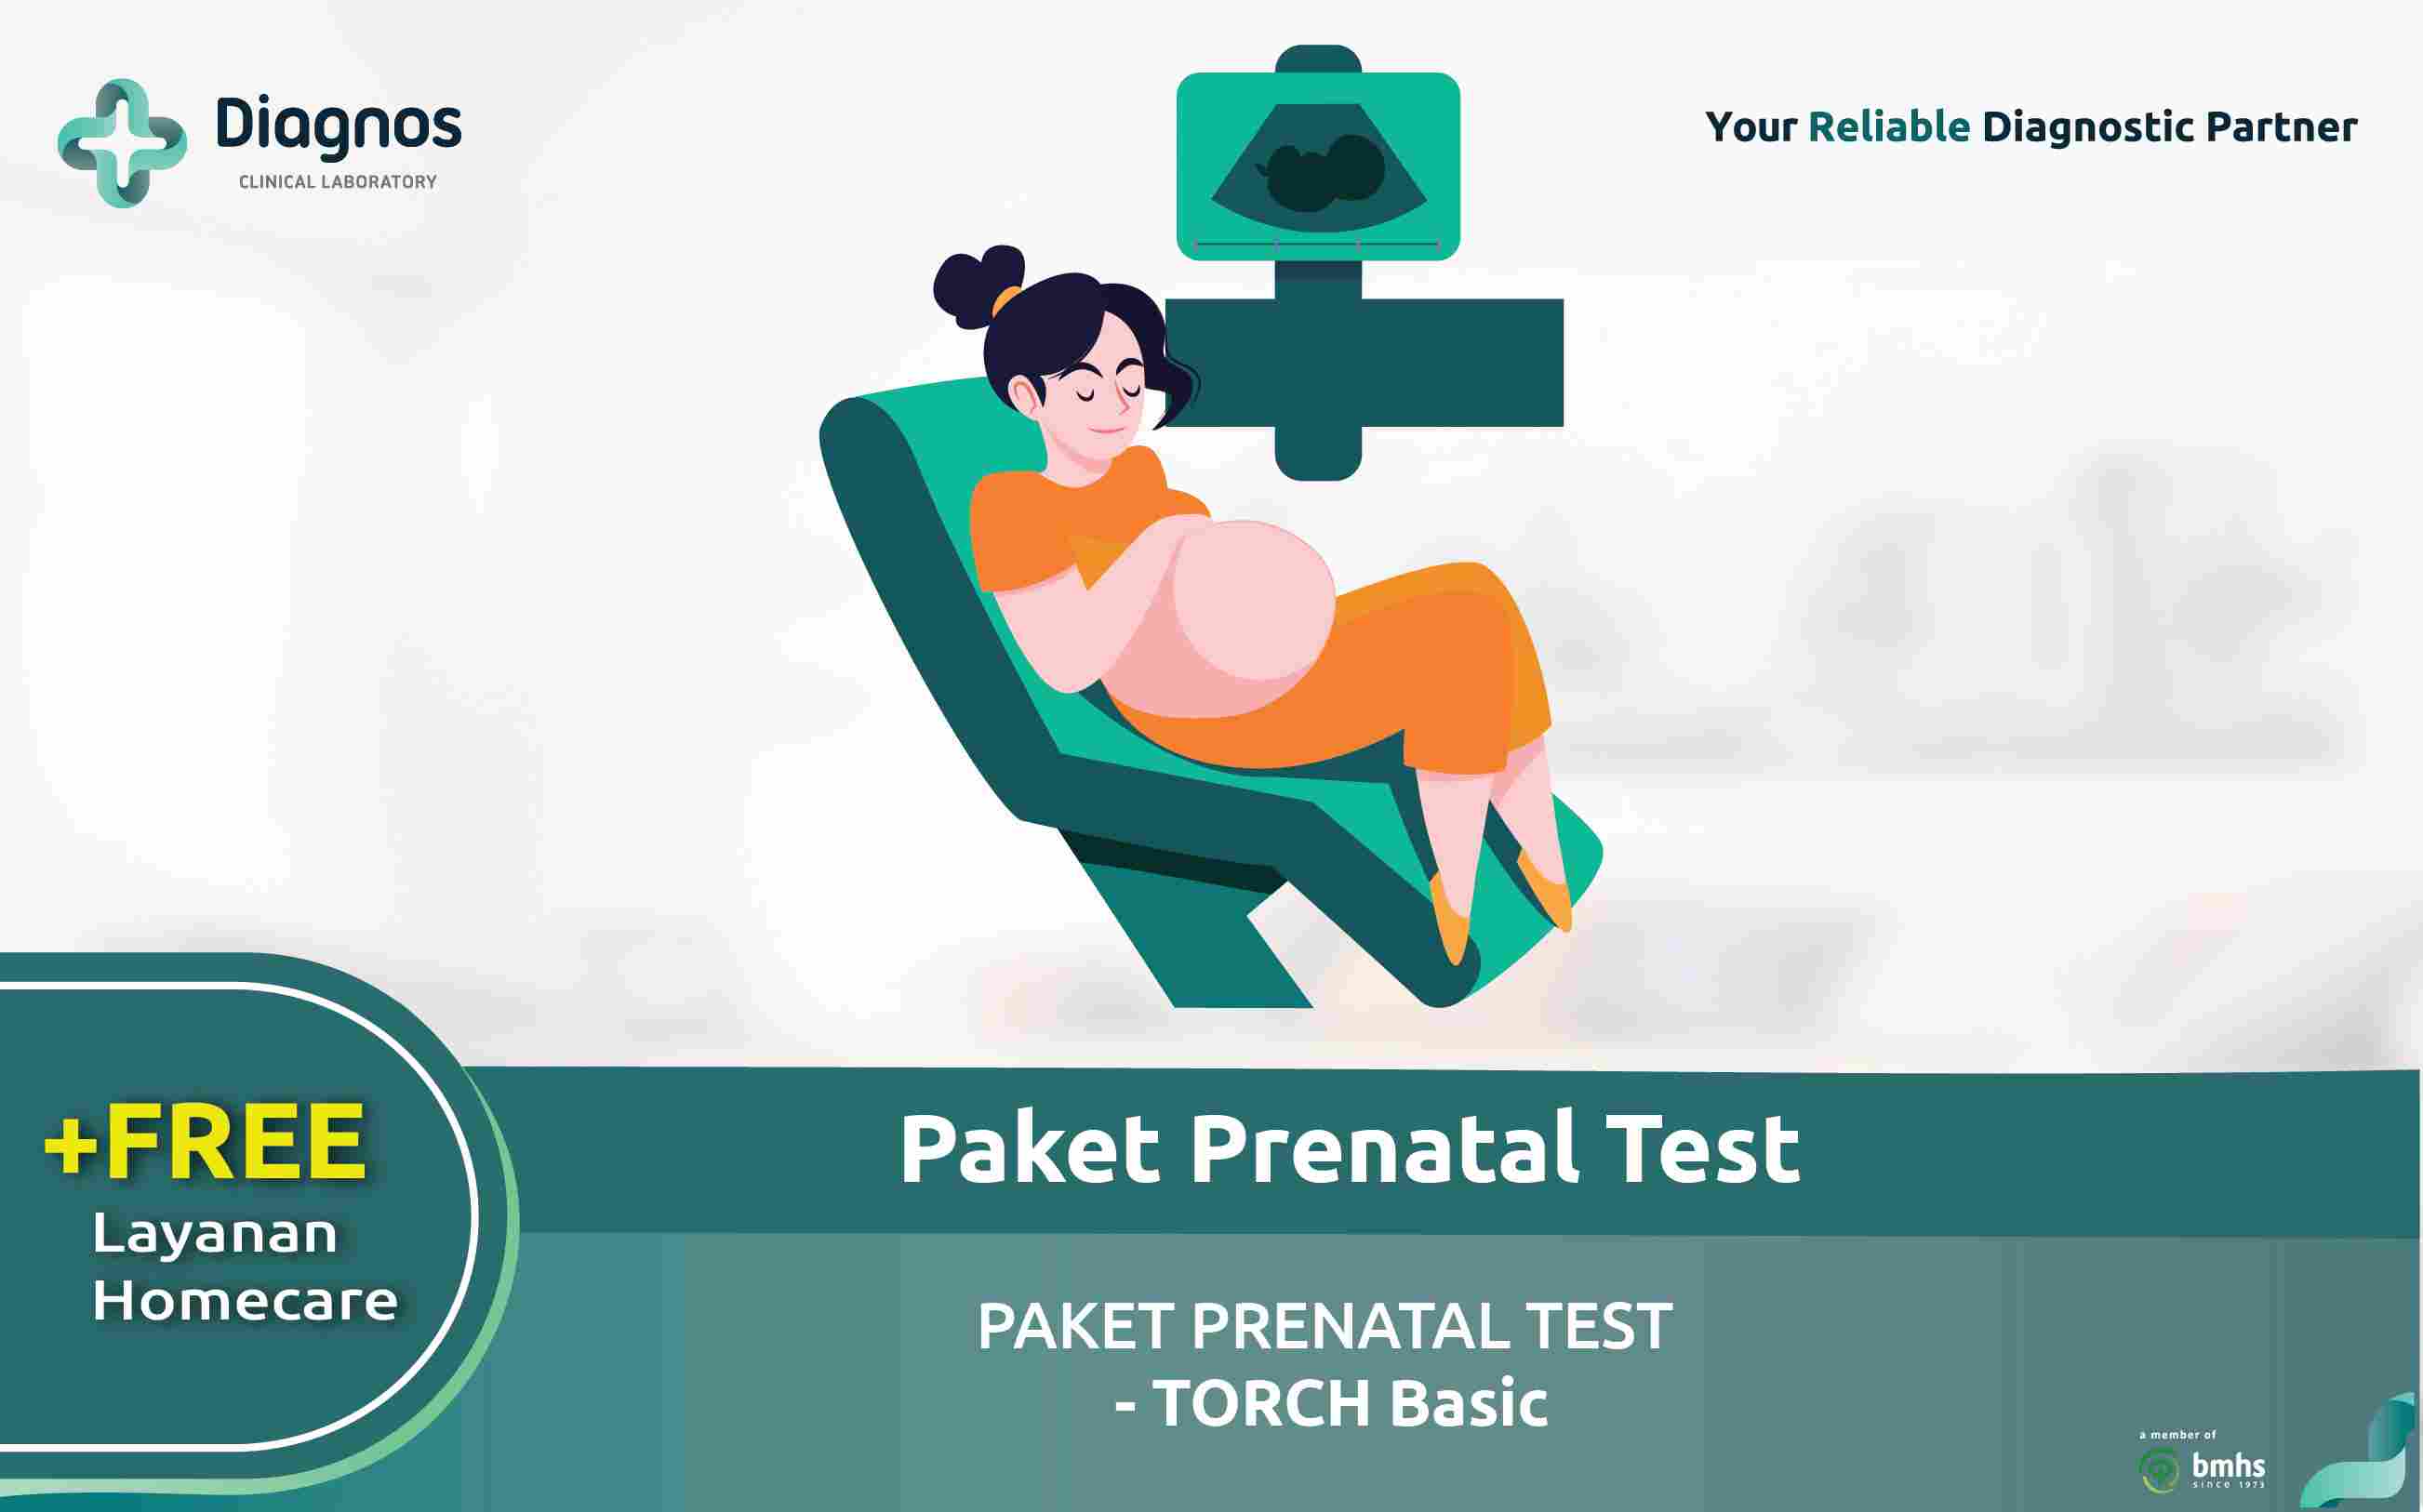 PAKET PRENATAL TEST - TORCH Basic